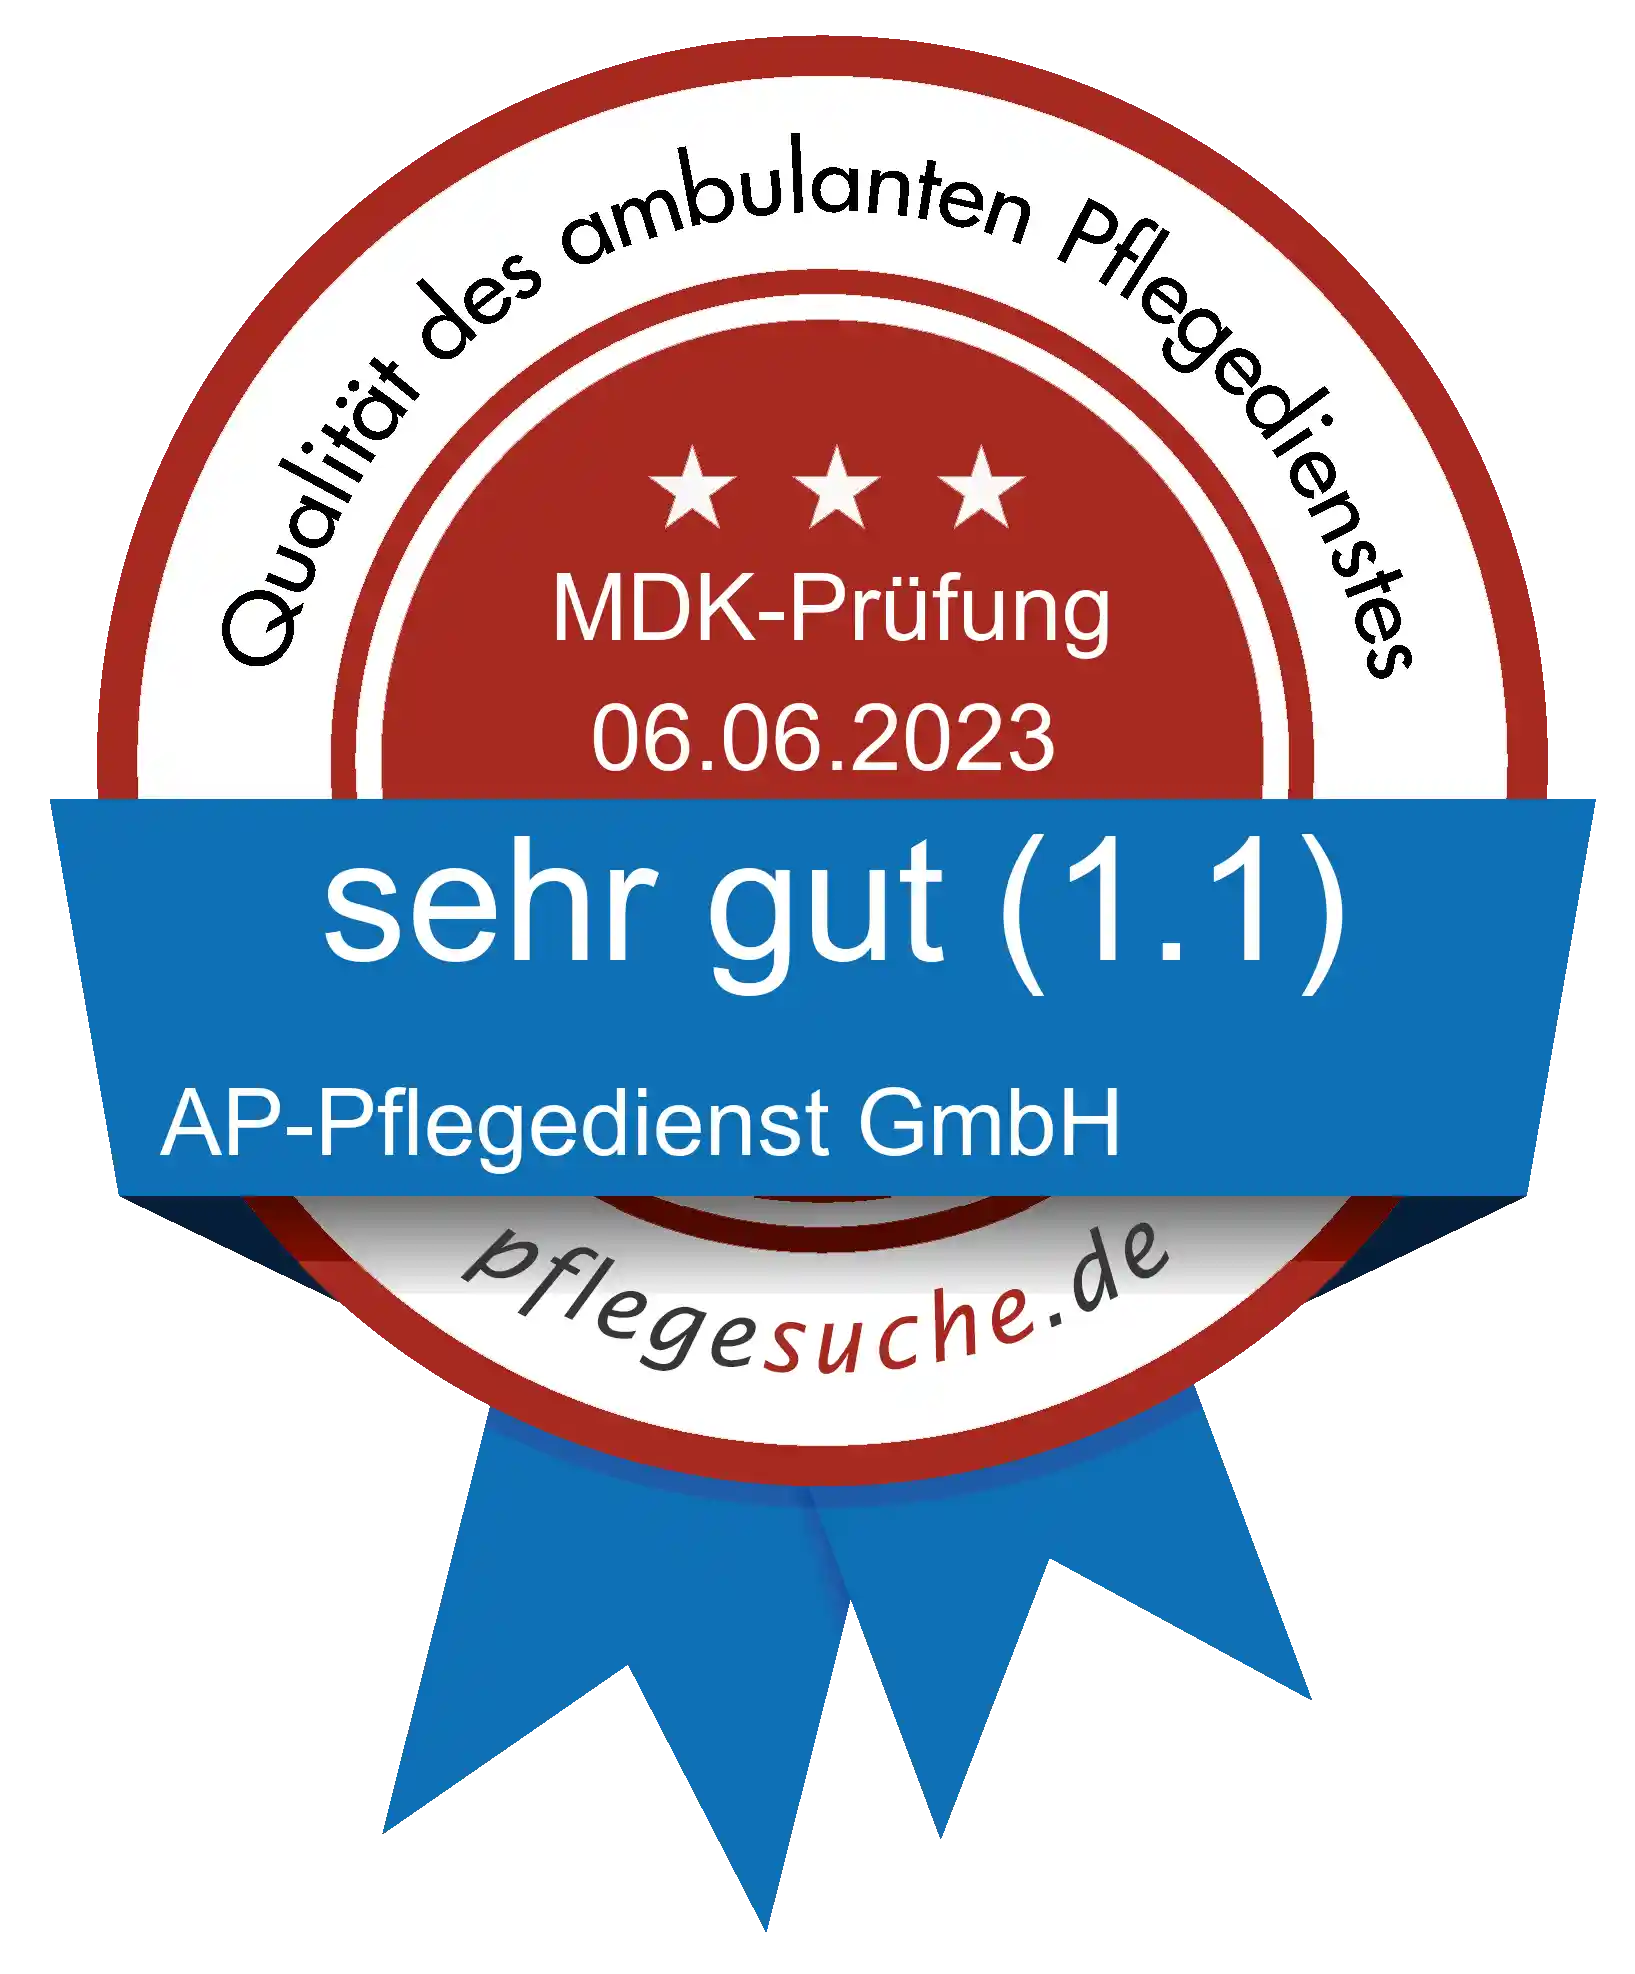 Siegel Benotung: AP-Pflegedienst GmbH